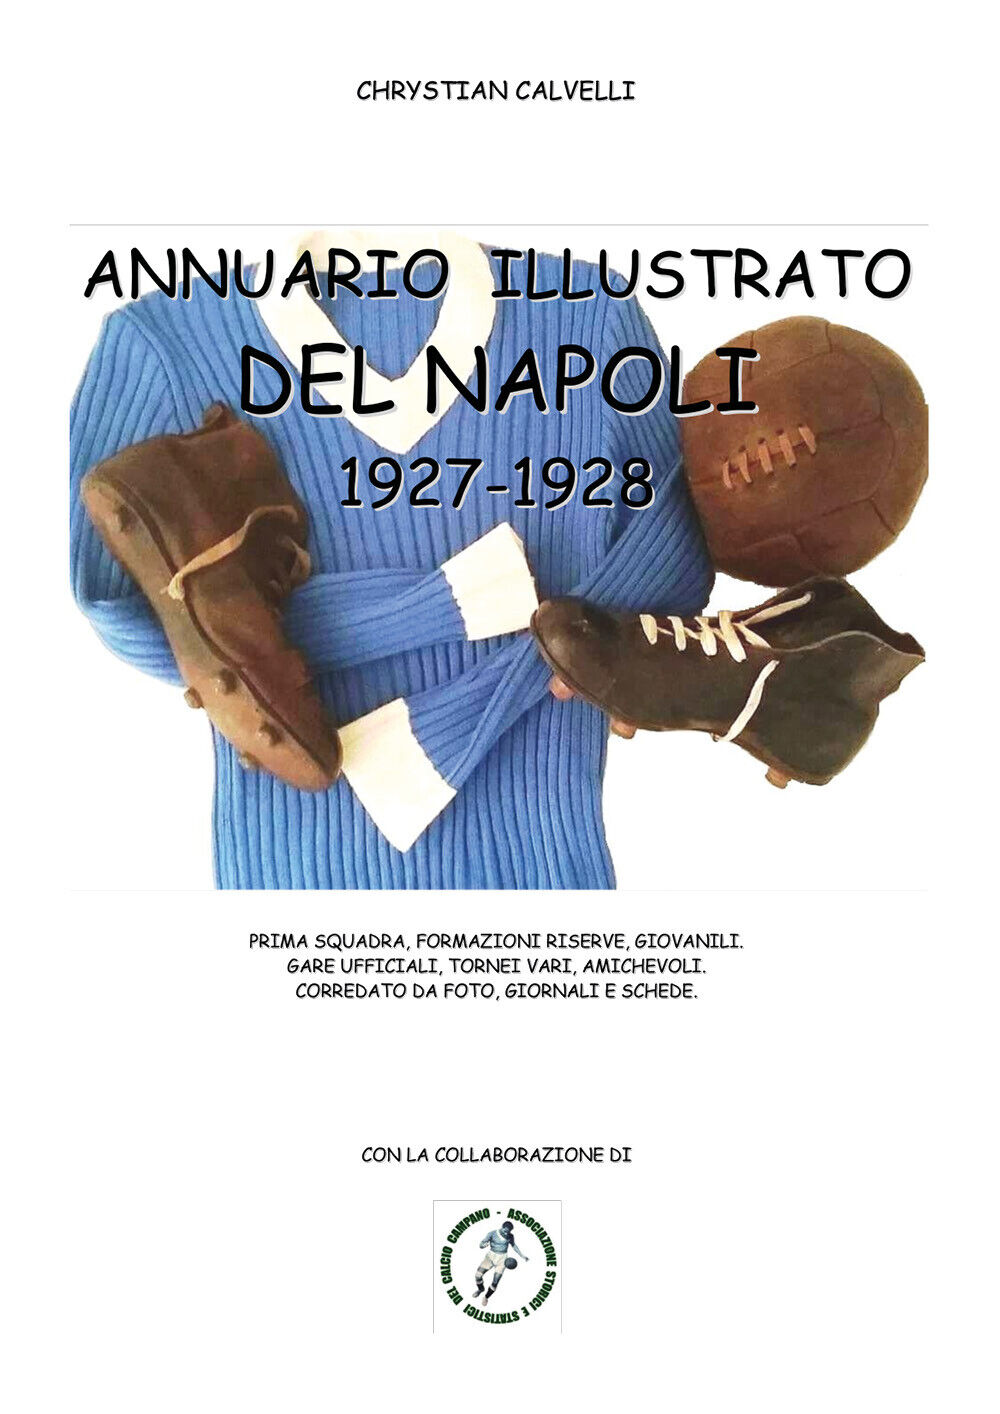 Annuario illustrato del Napoli 1927-1928 di Chrystian Calvelli,  2021,  Youcanpr